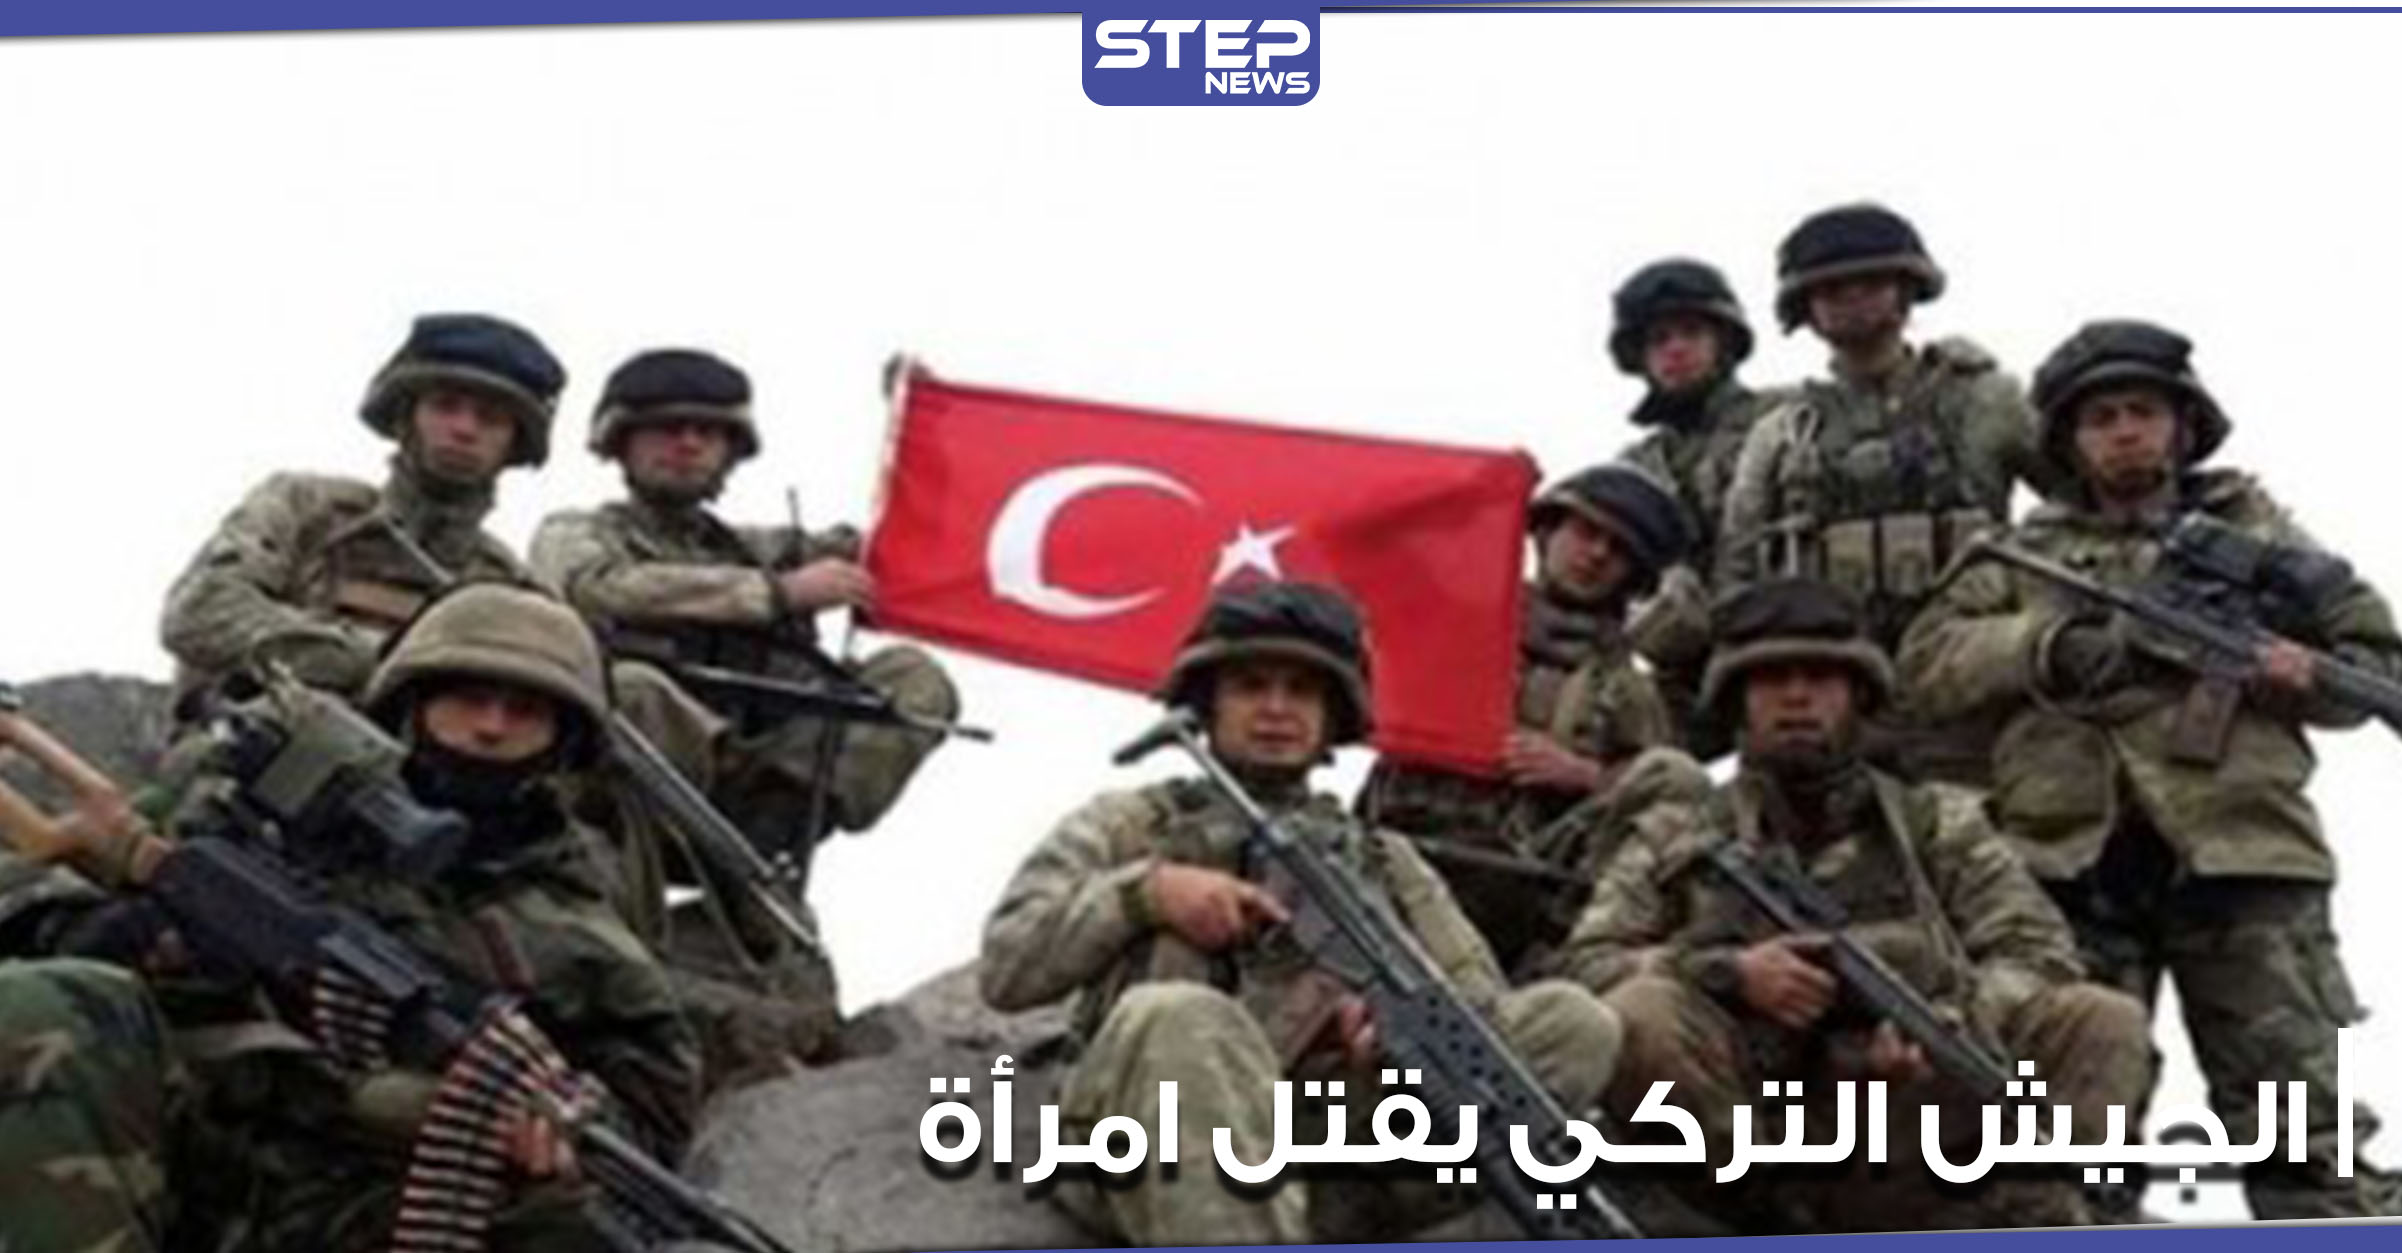  الجيش التركي